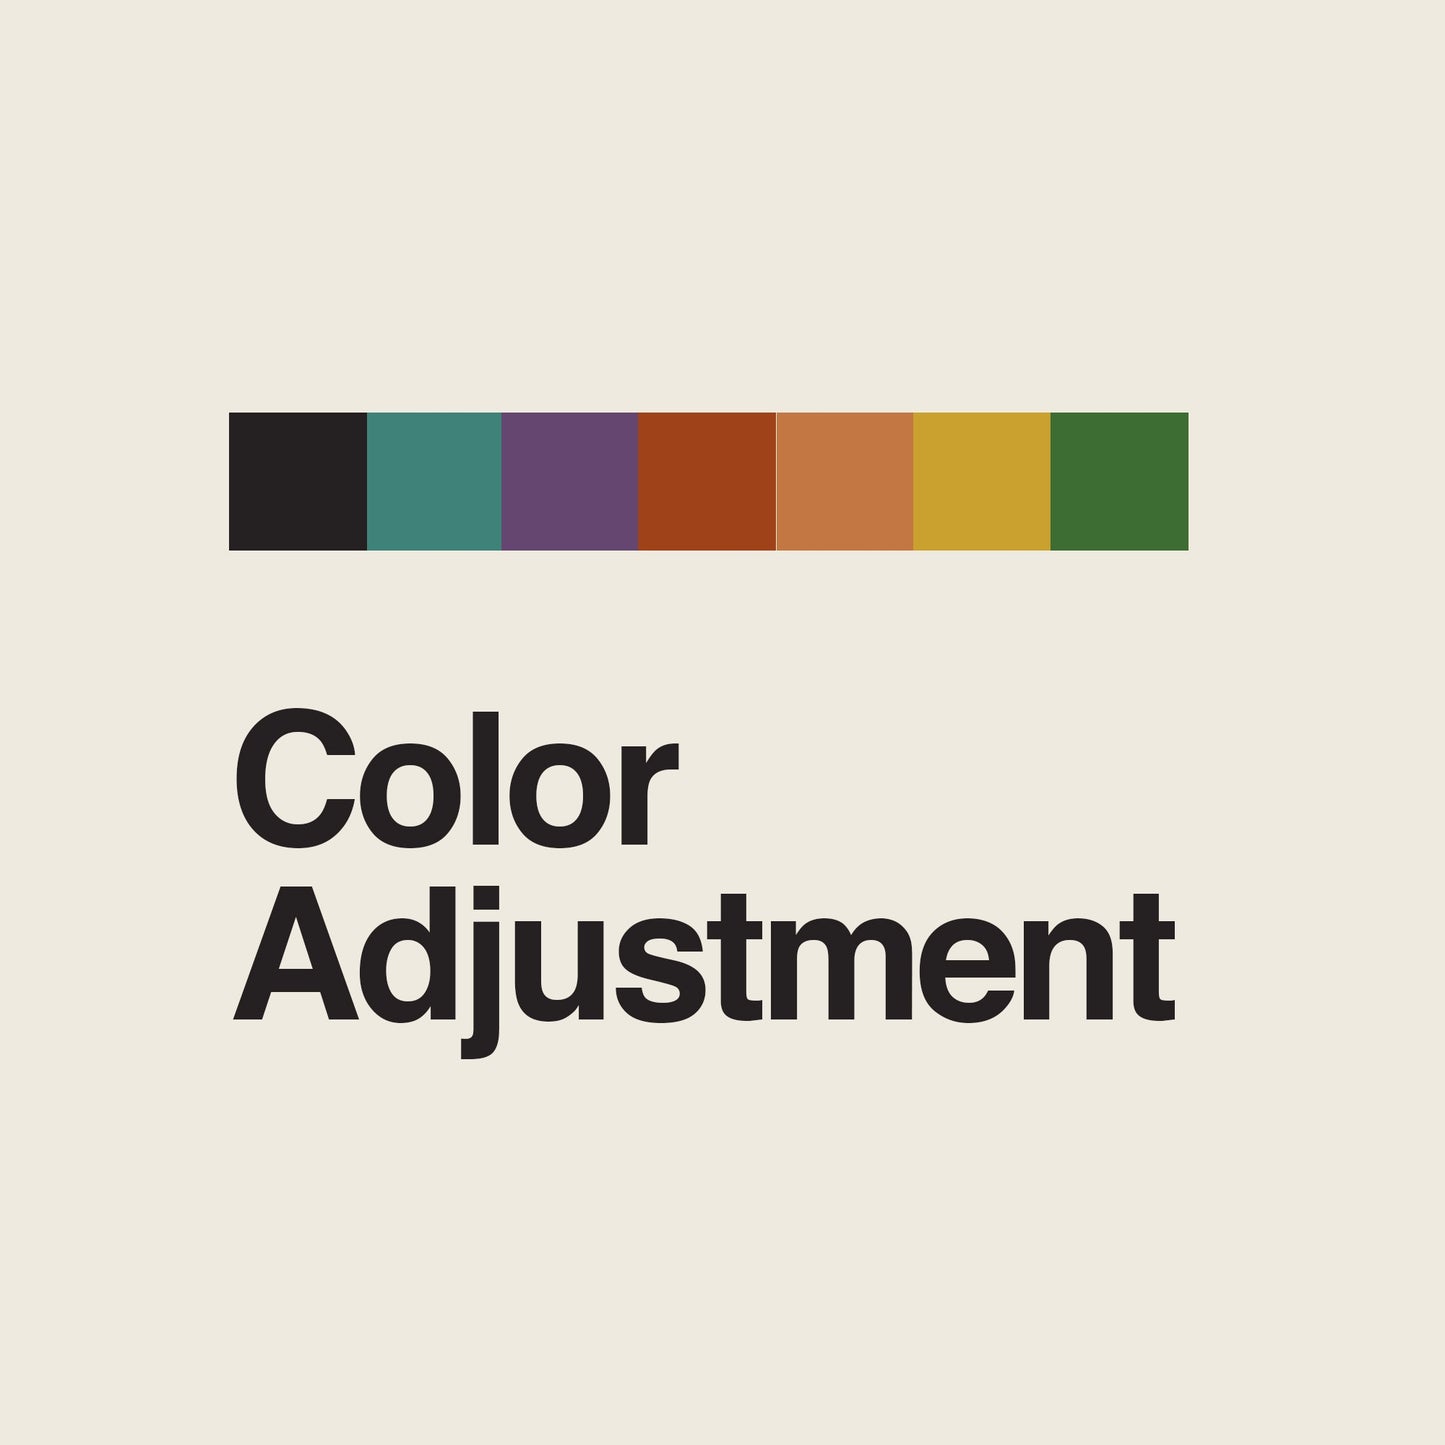 Color Adjustment